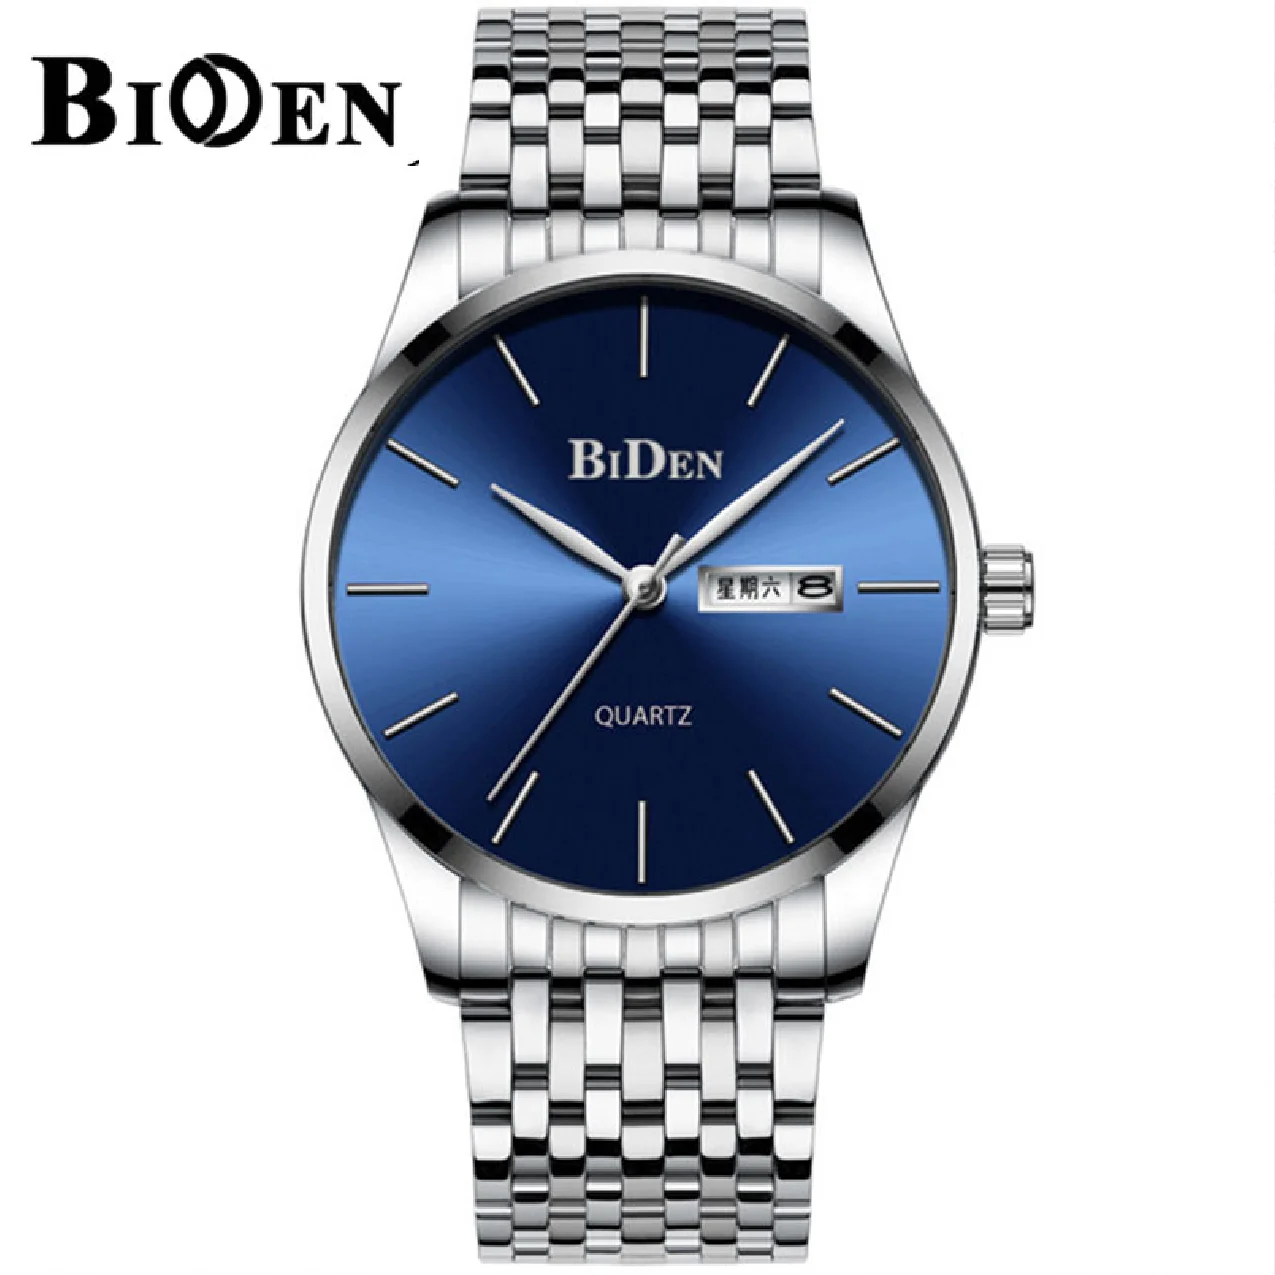 

BIDEN Brand Luxury Men Quartz Watch Stainless Steel Business Simple Watches Calendar Week Wristwatch For Male relogio masculino